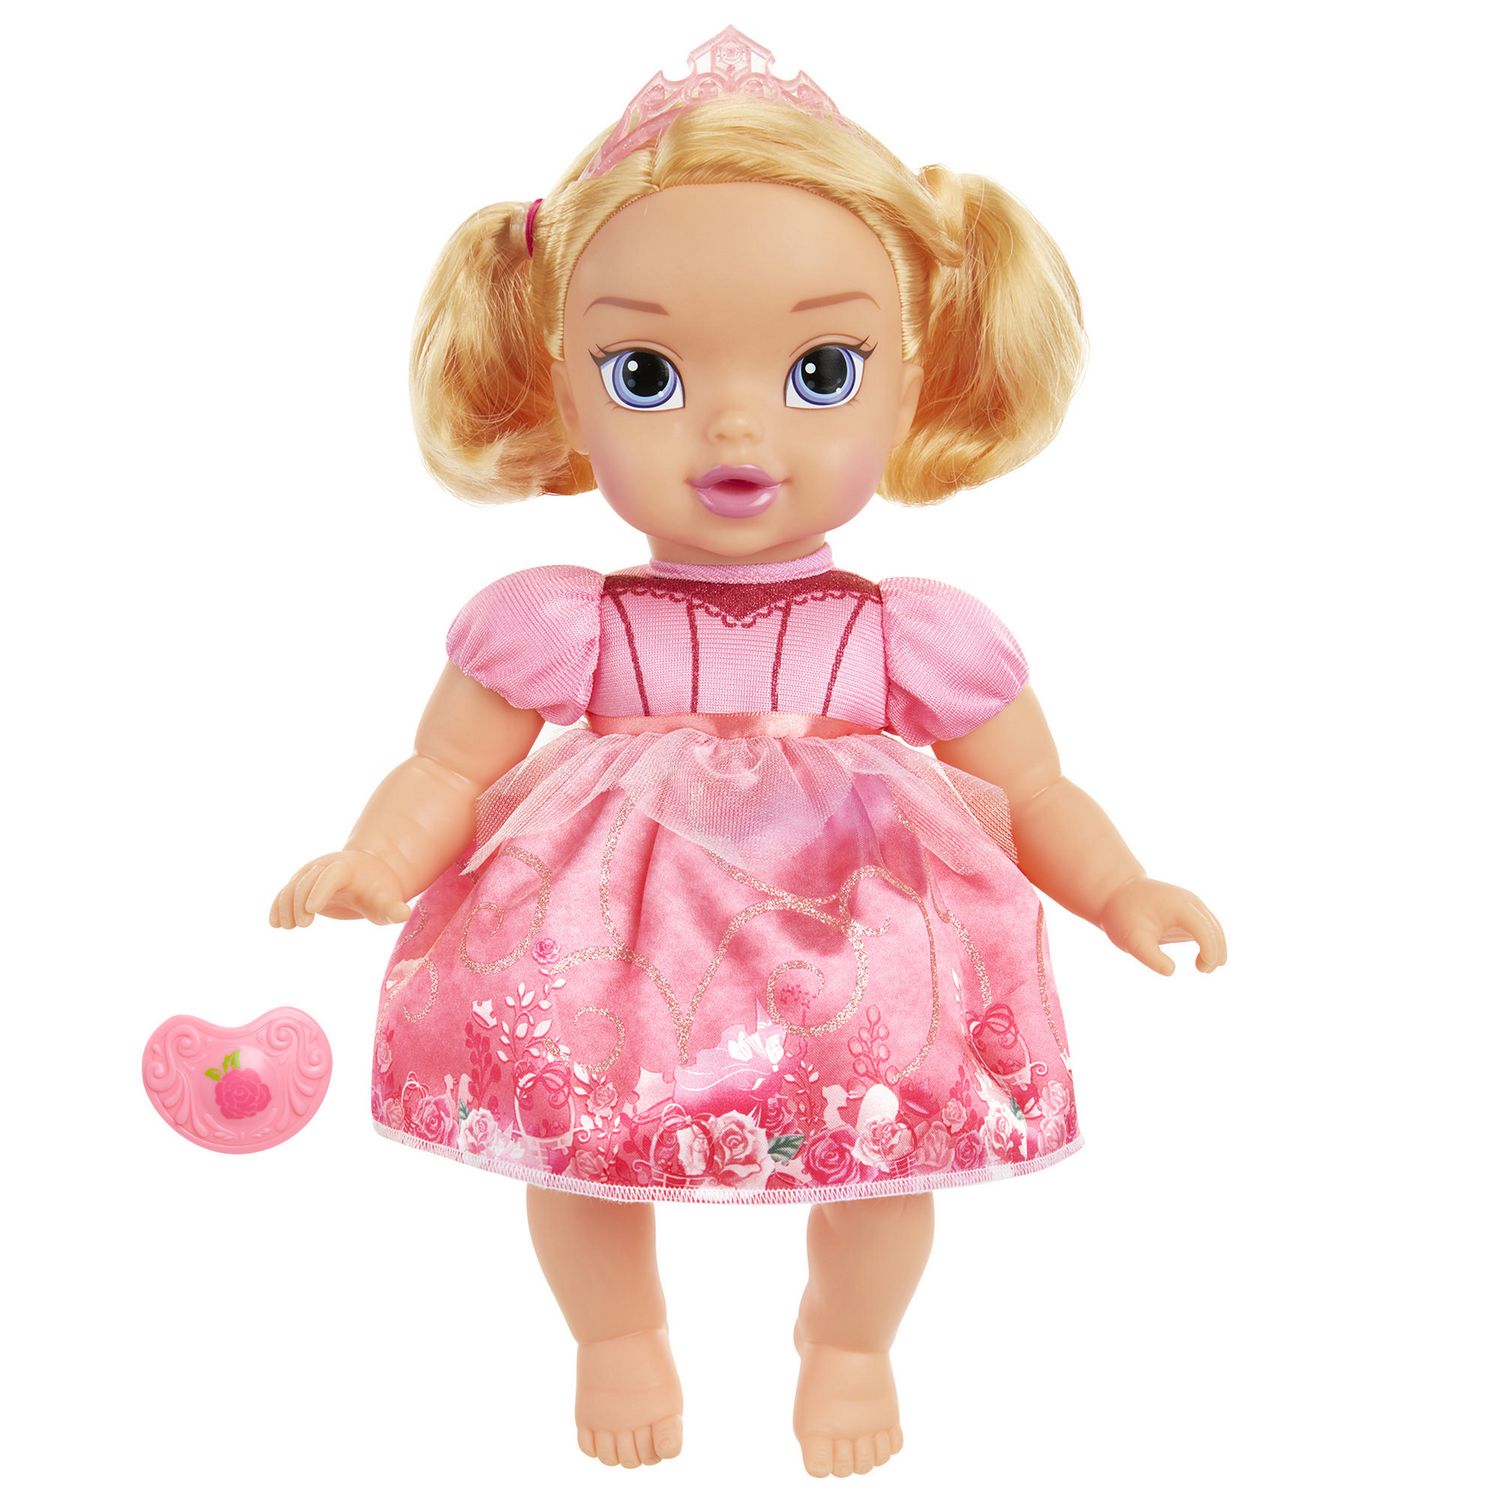 Disney Princess Baby Doll Aurora Walmart Canada